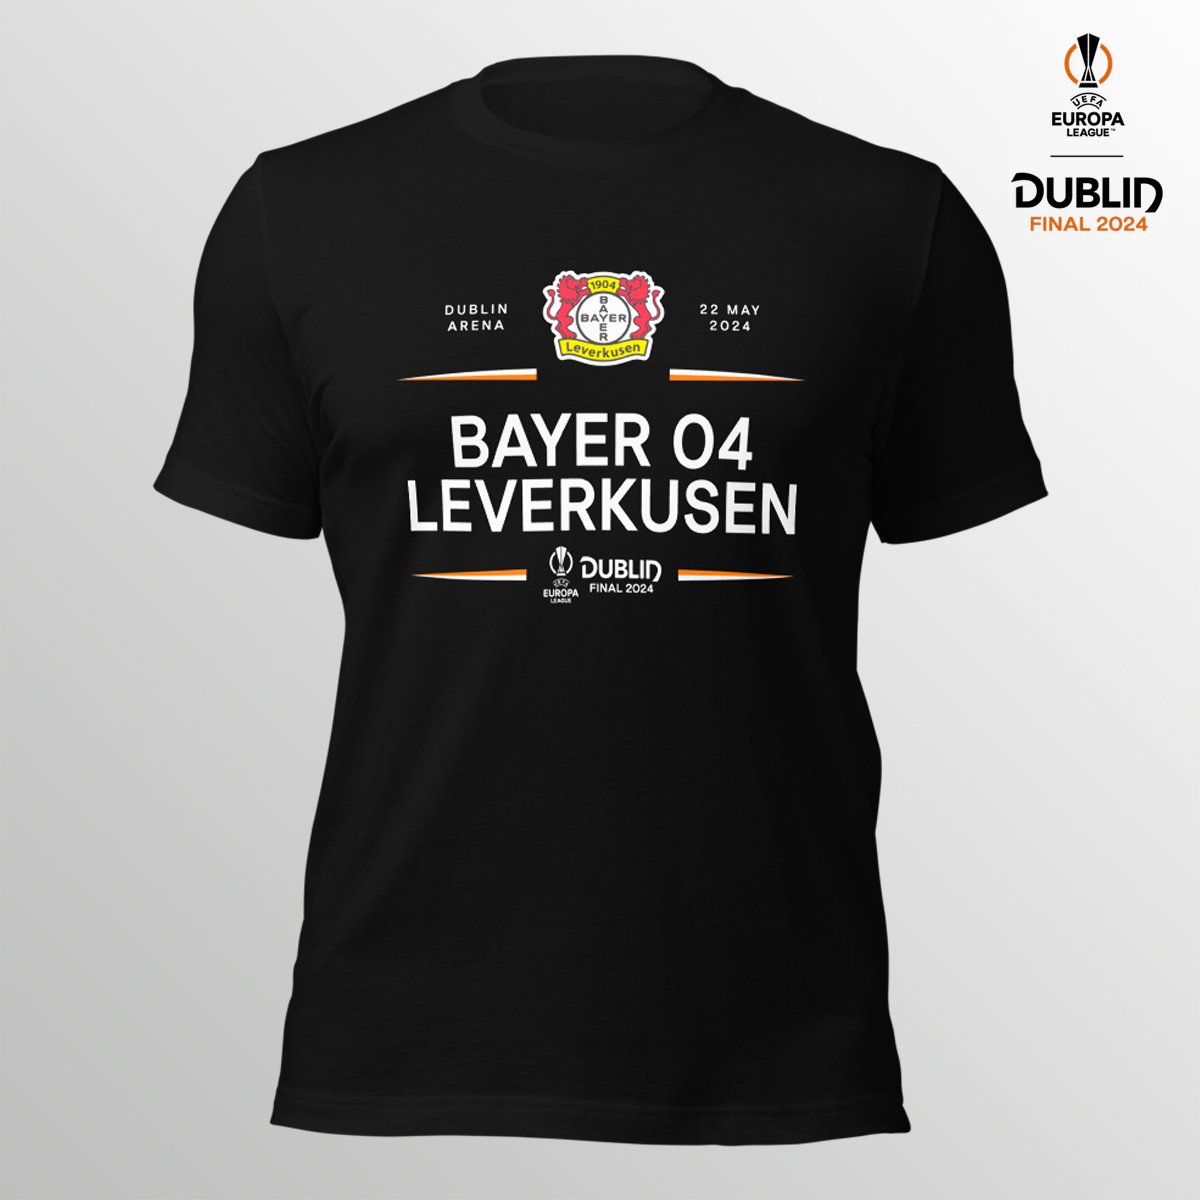 Dublin 24 UEL Final Leverkusen T-shirt